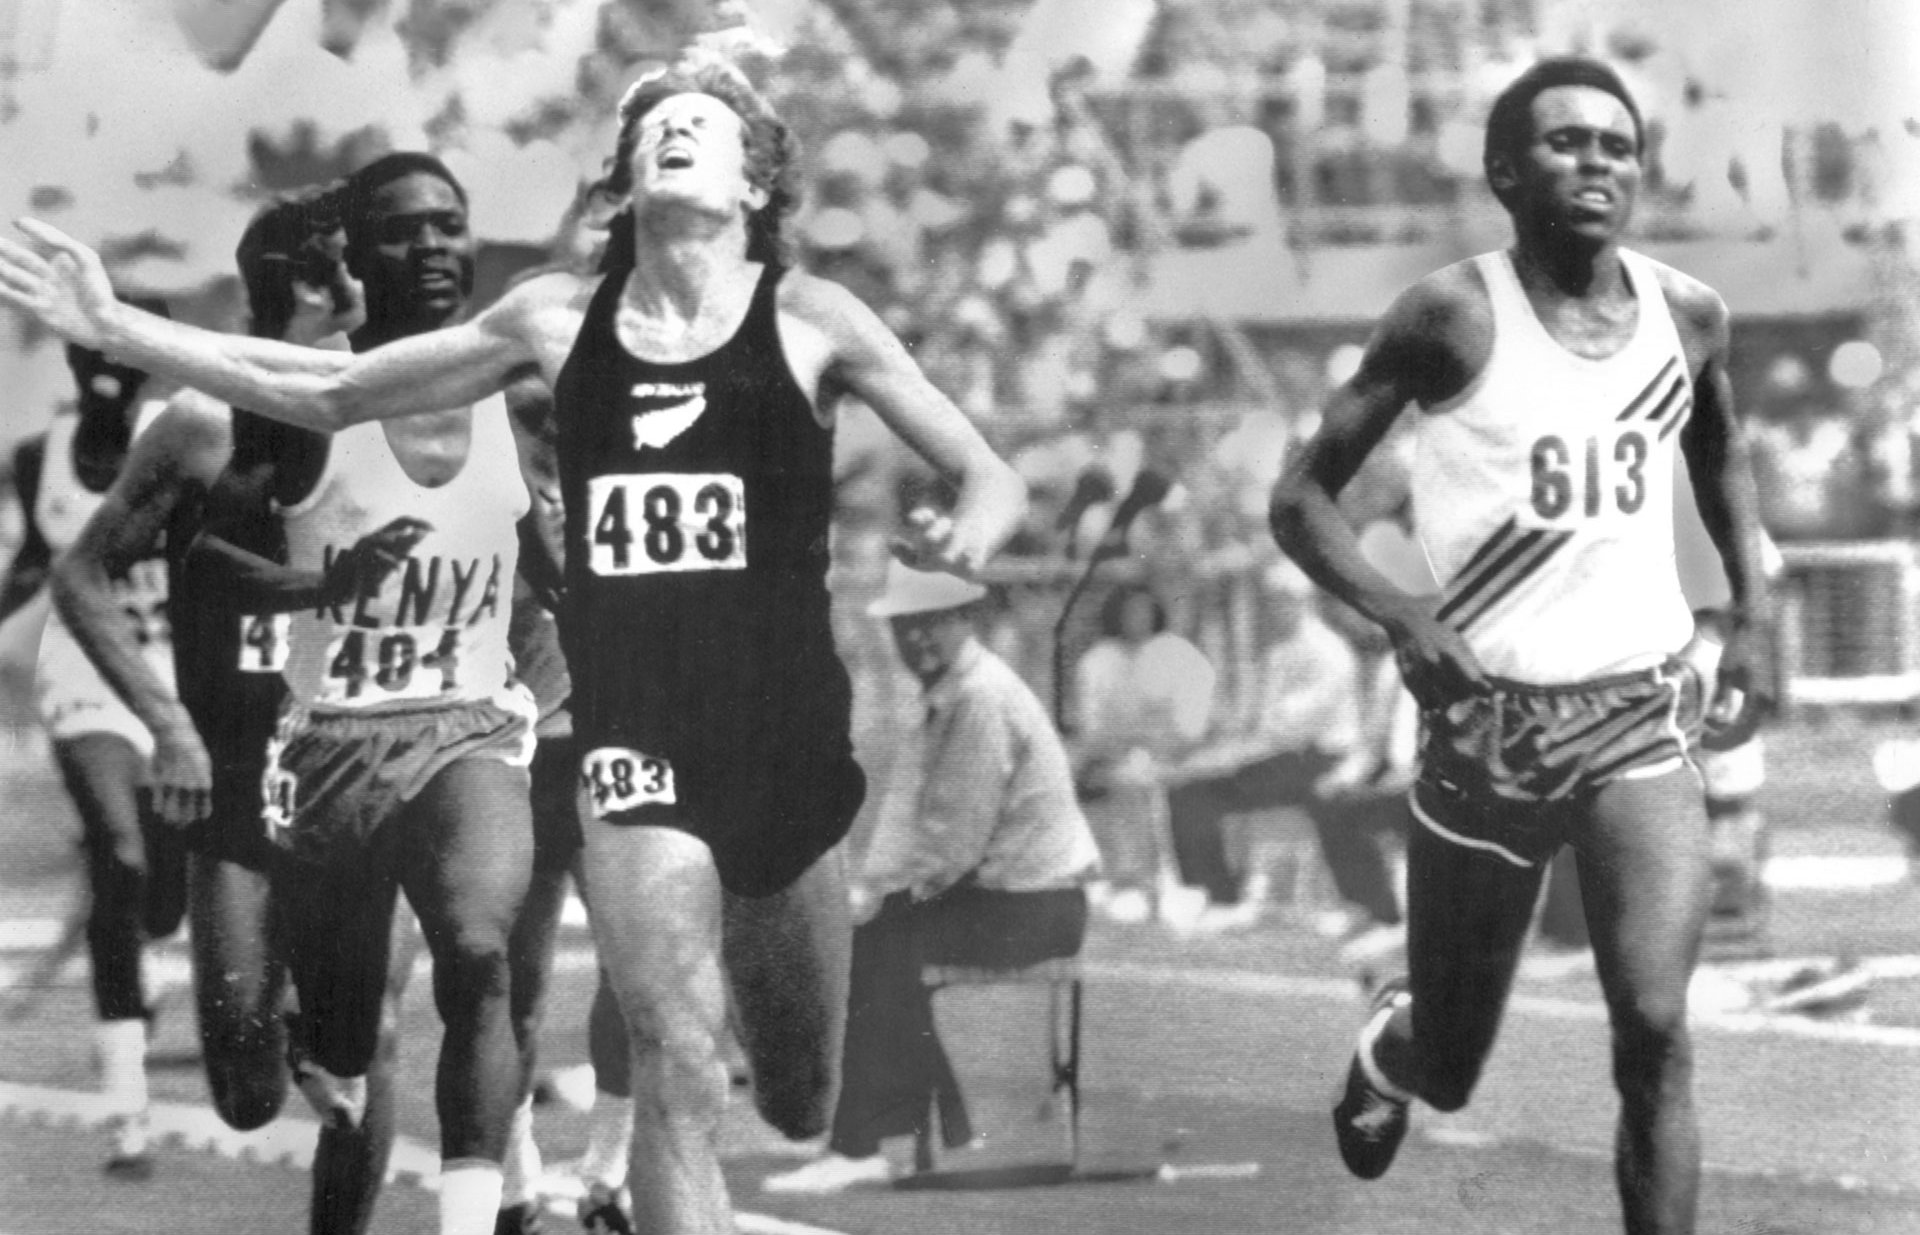 Photos Filbert Bayi [Tanzanie] vainqueur au 1.500 mètres. Jeux africains, photographie de Lennart Nygren, 1973.
